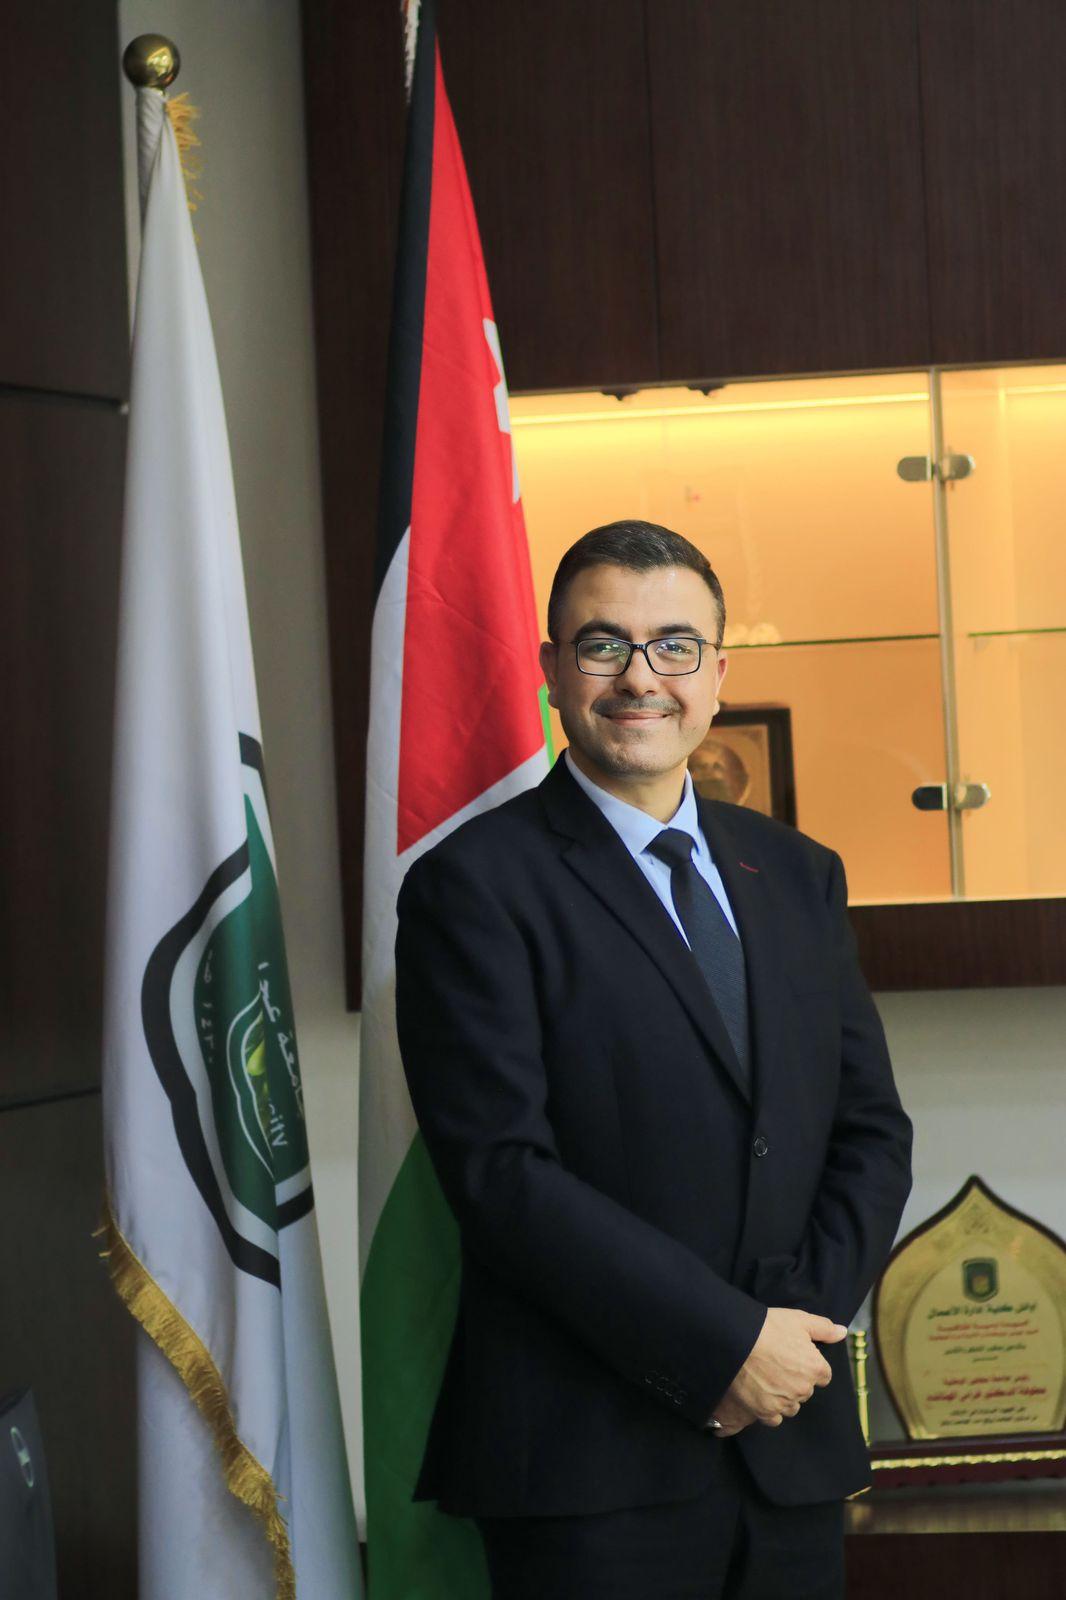 رئيس جامعة عجلون الوطنية يُعلن عن استحداث مكتب للتعاون الدولي والعلاقات الخارجية